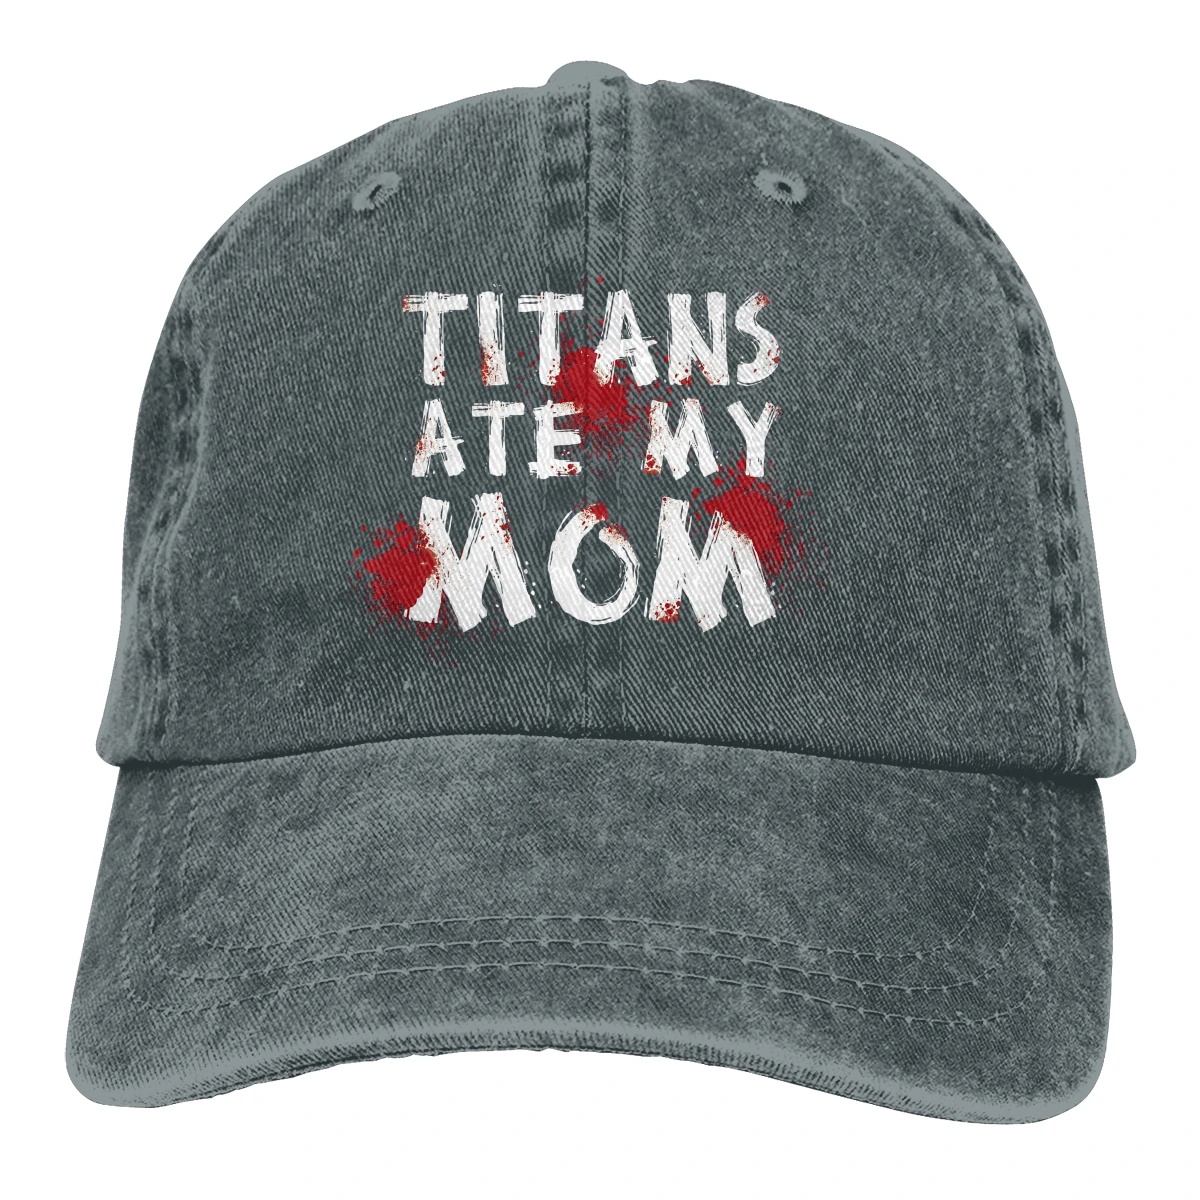 Berretto da Baseball Titans Ate My Mom uomo Attack on Titan berretti Aniime giapponesi colori cappellini Snapback estivi donna